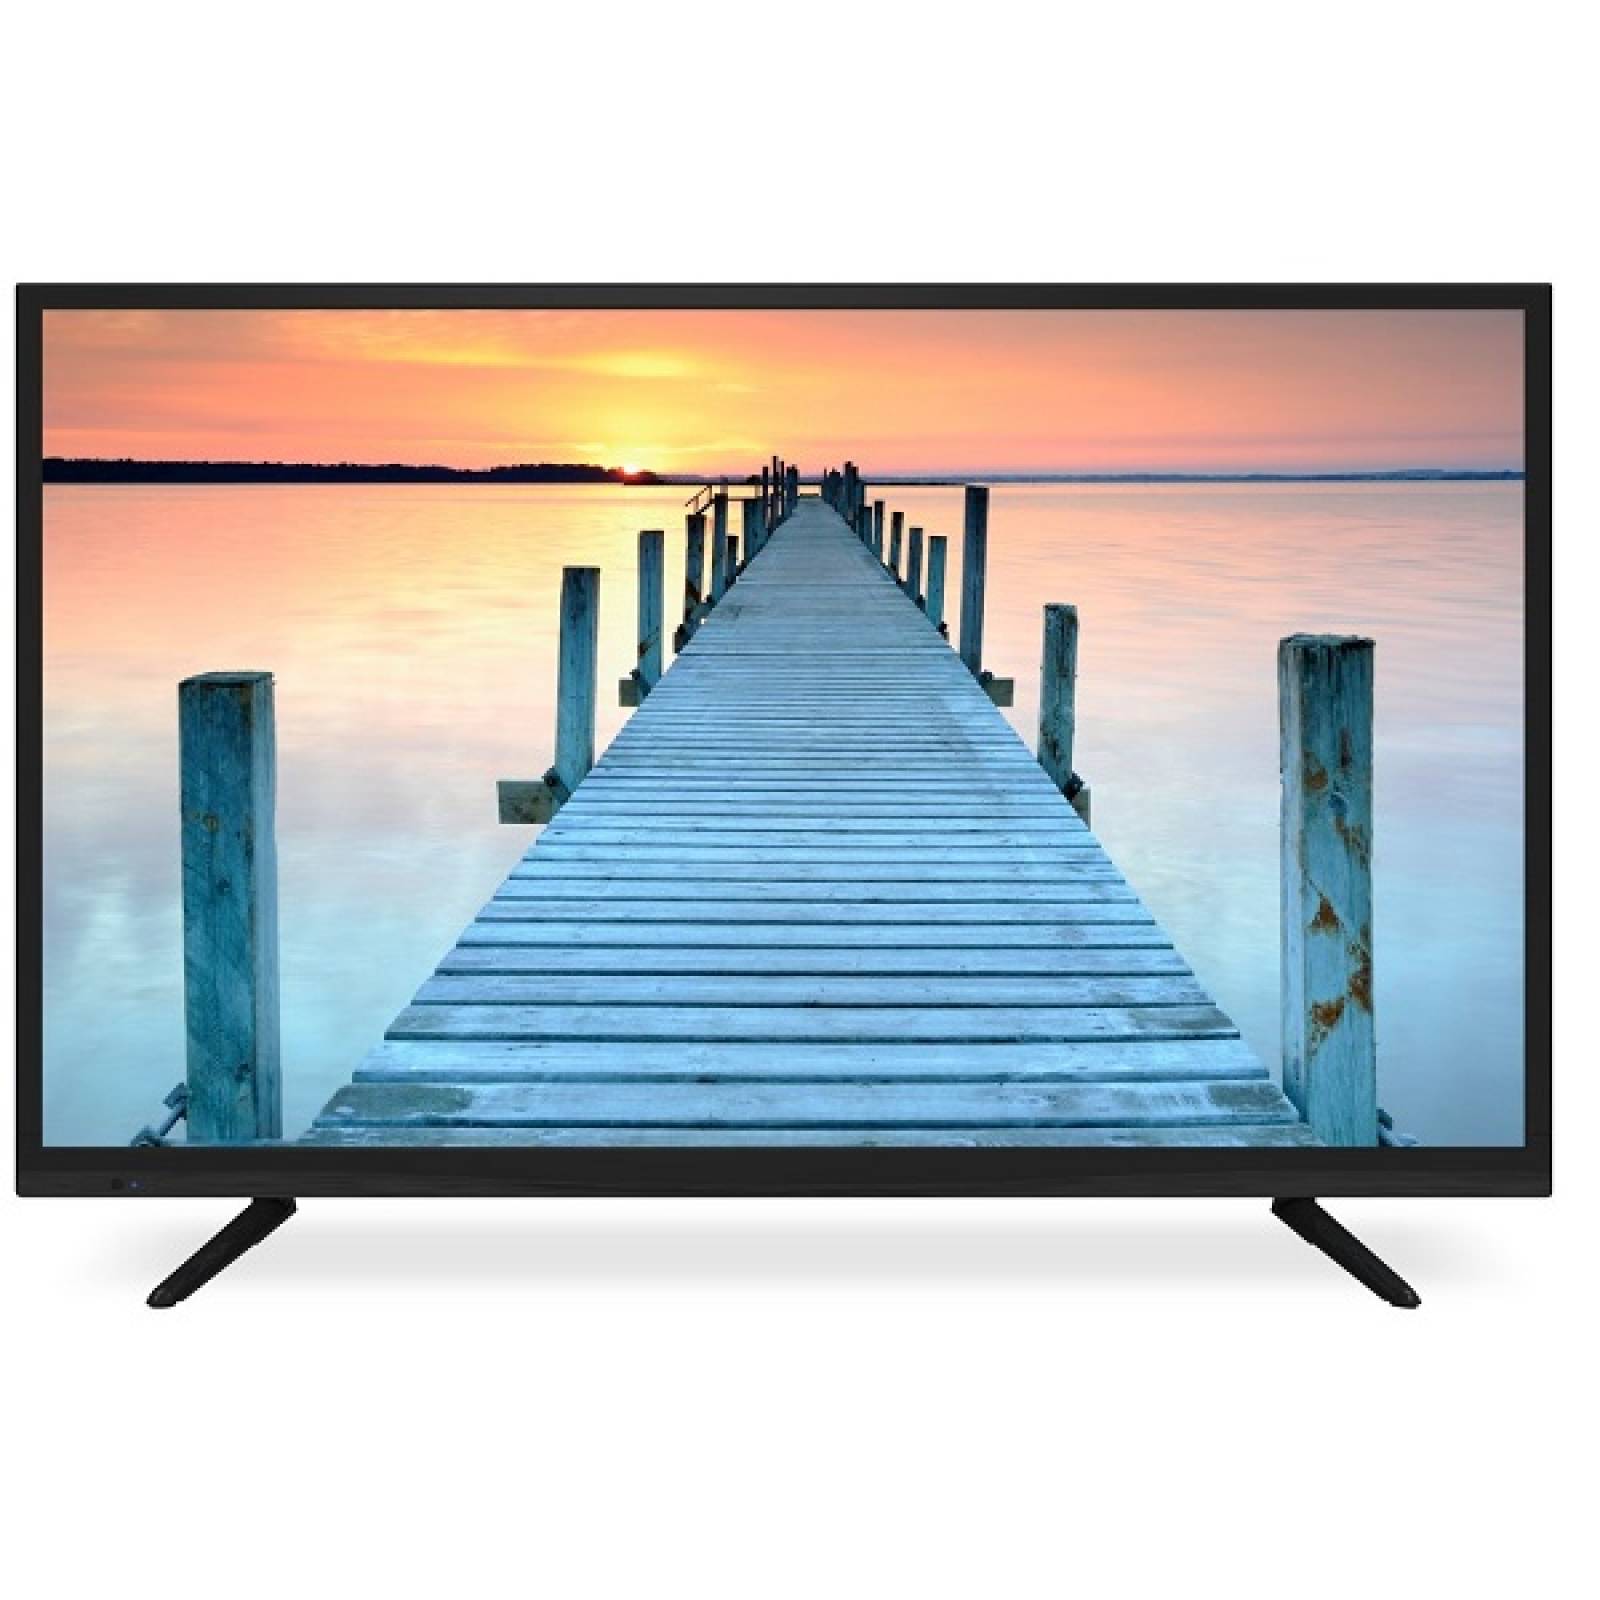 Smart TV RCA 55 LED 4K UHD RNSMU5536 - Reacondicionado